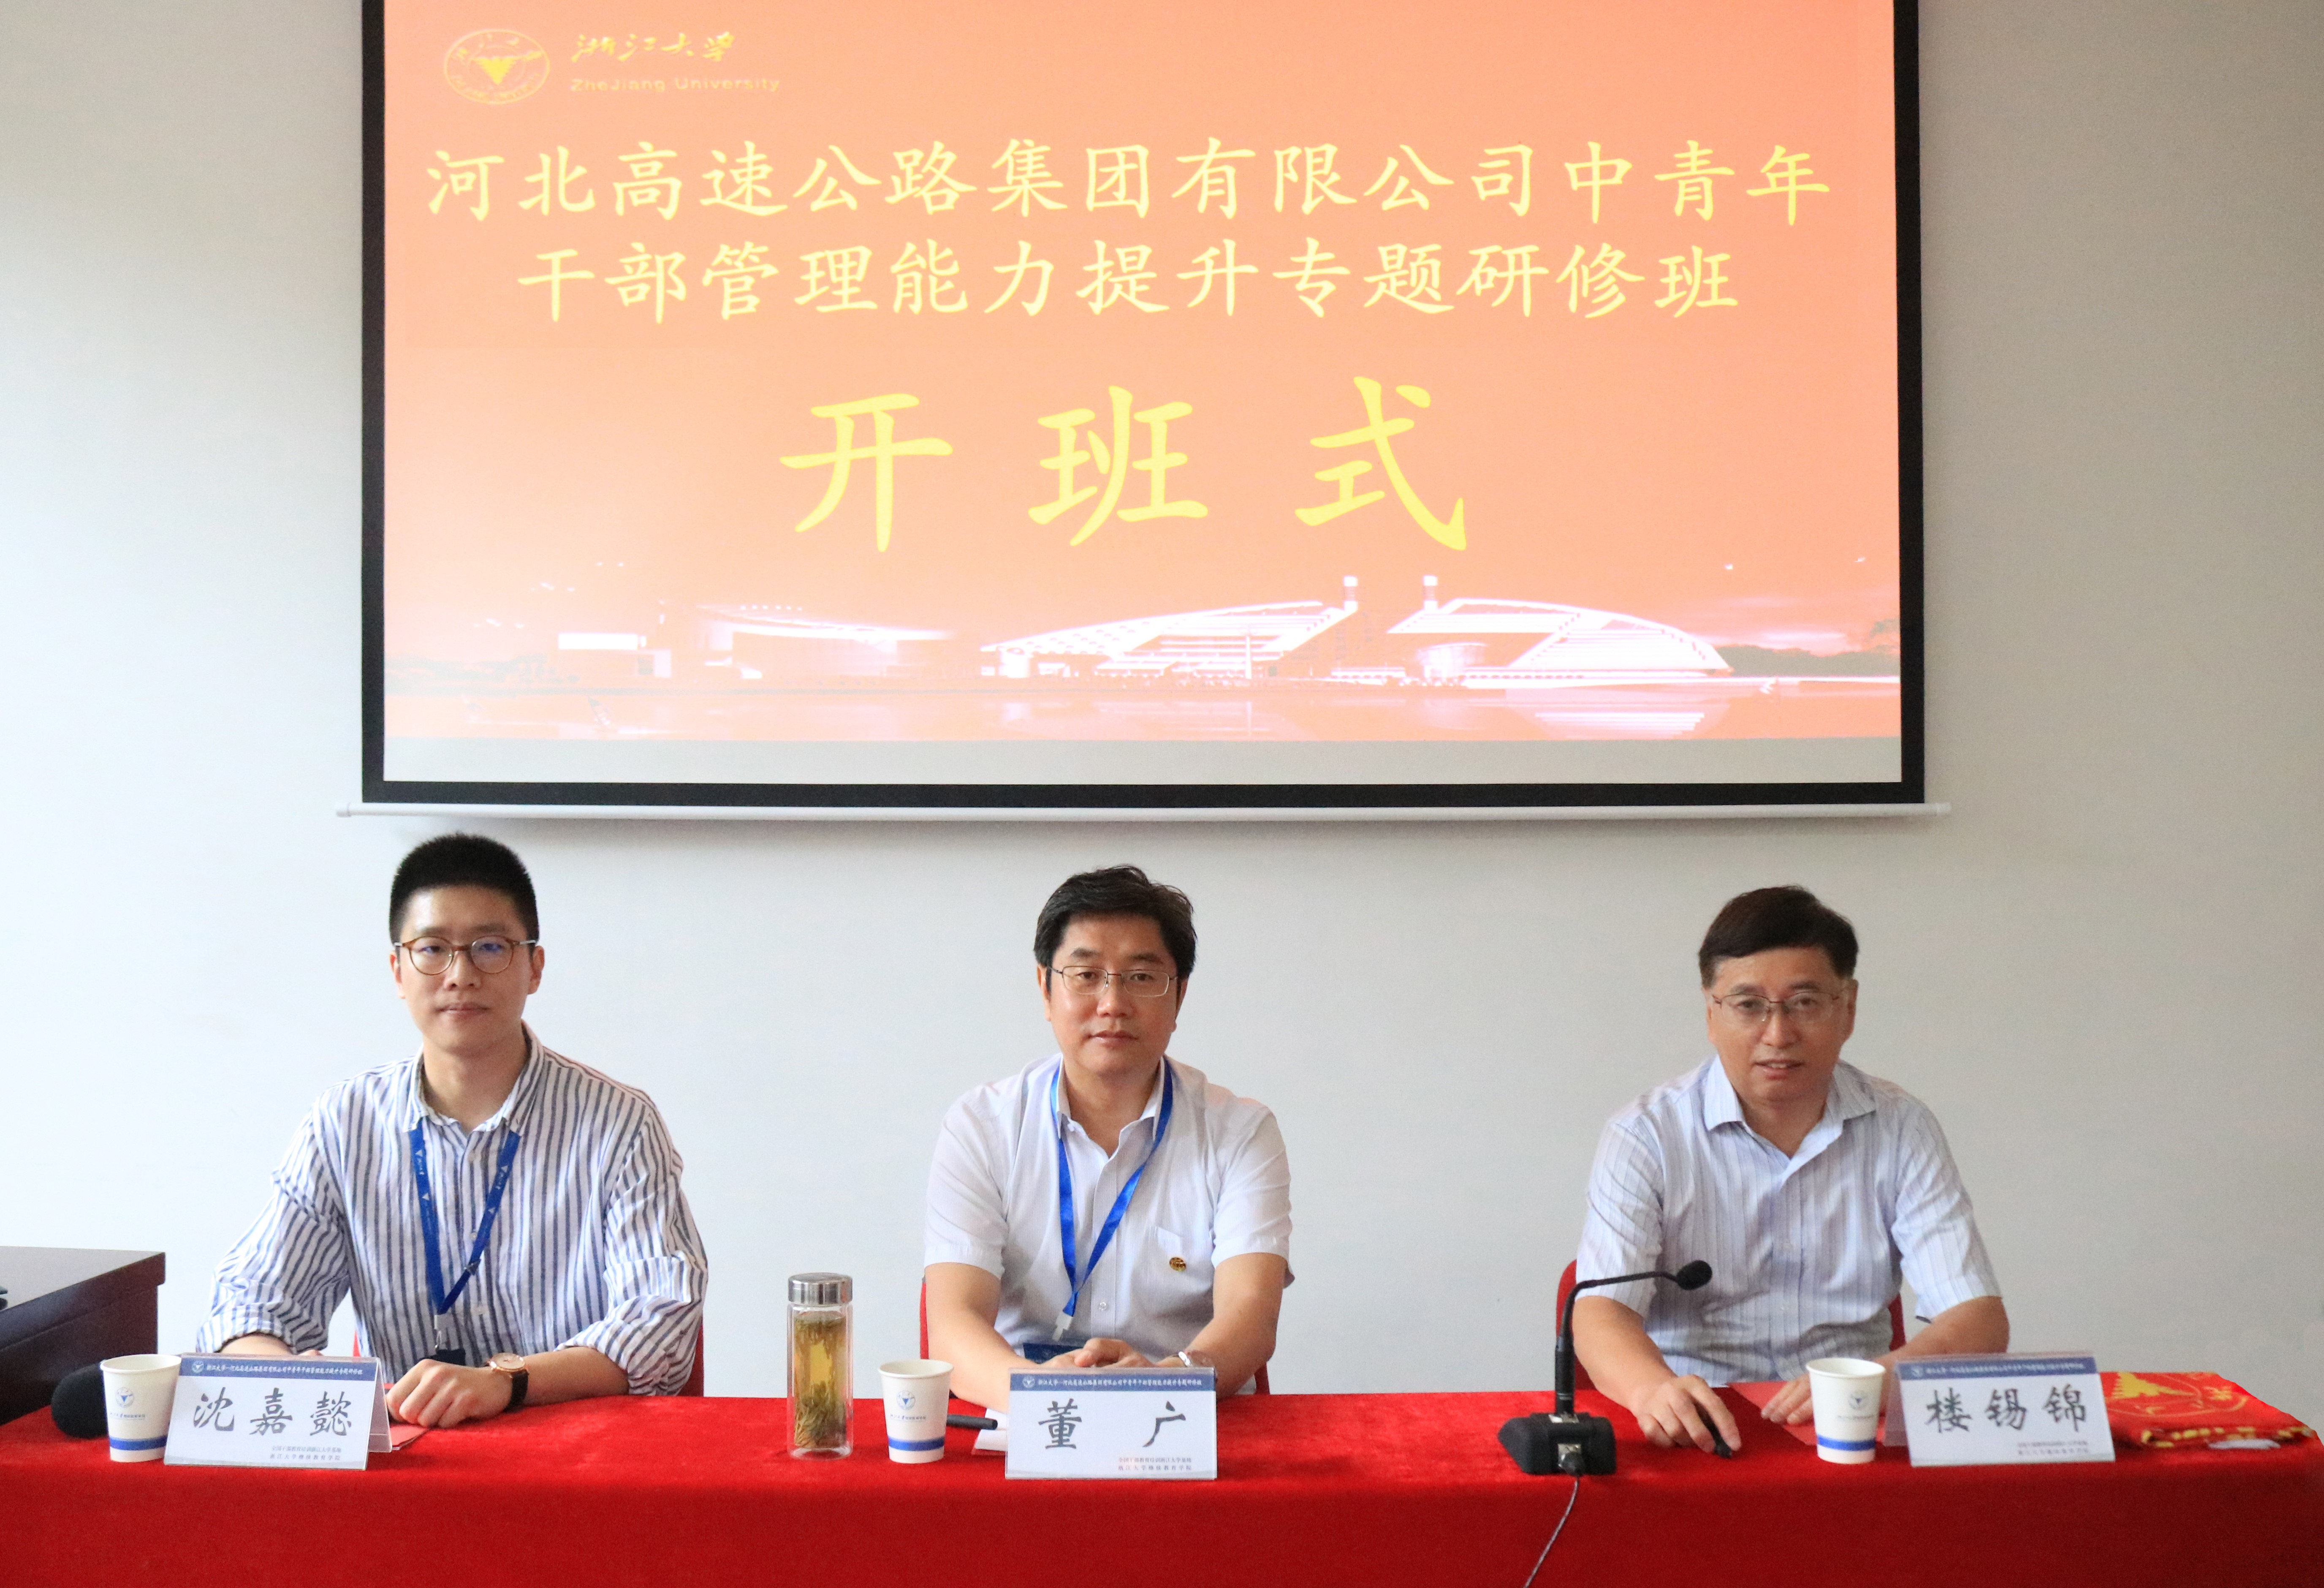 河北高速公路集团有限公司中青年干部管理能力提升专题研修班在浙江大学举办